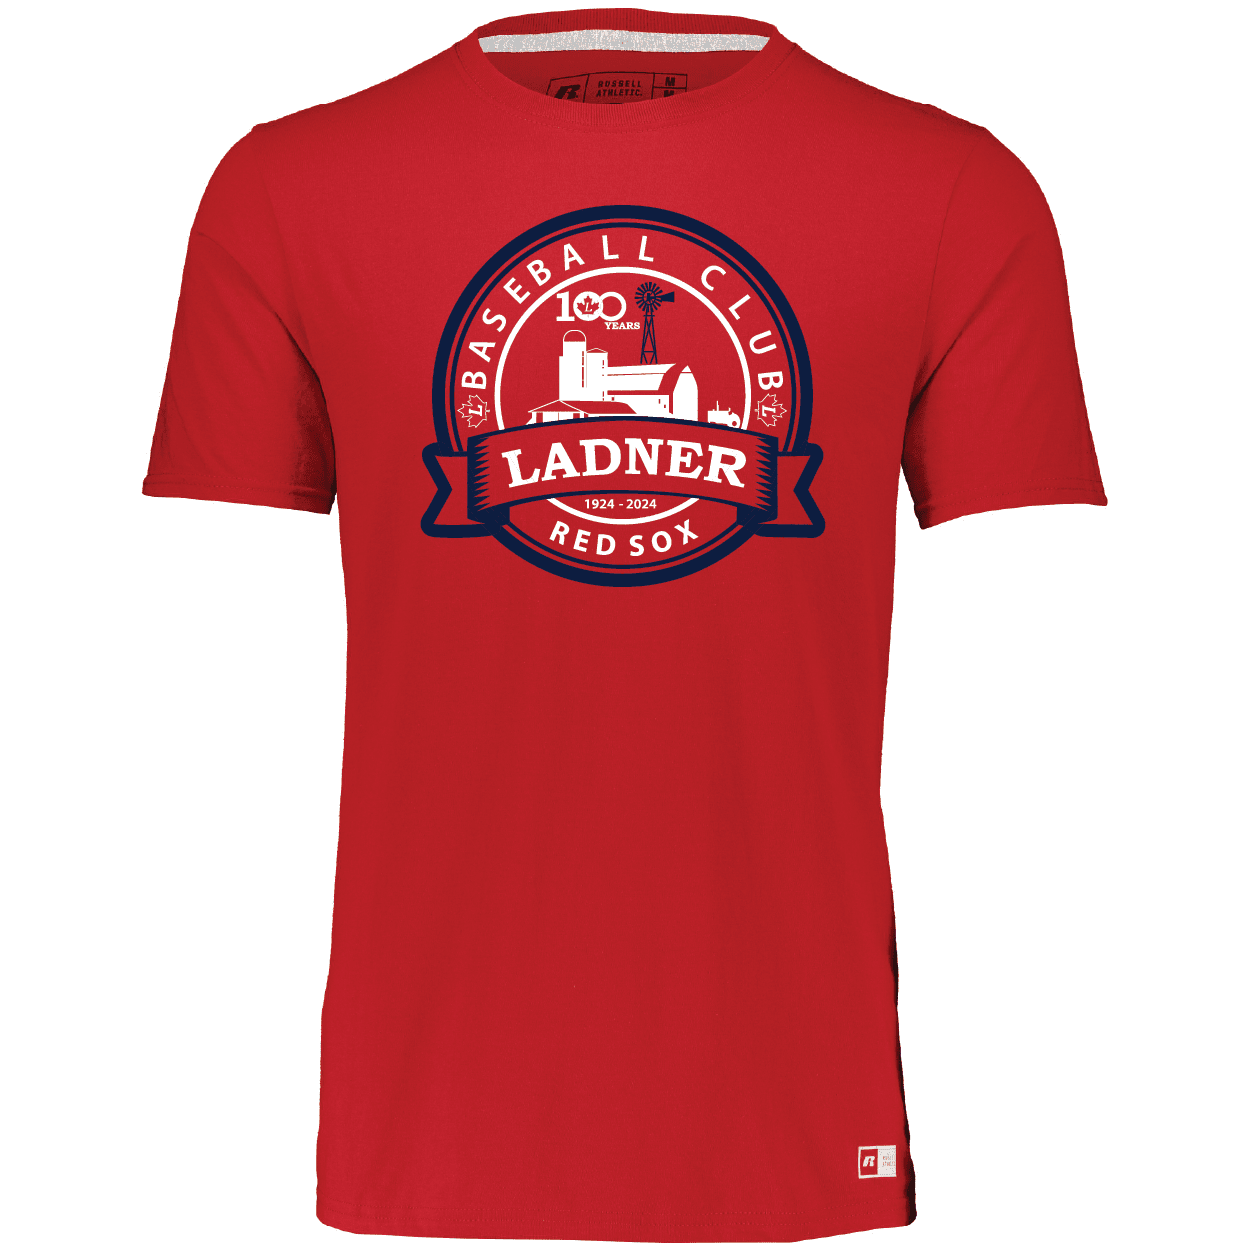 Essential Tee Ladner Minor Baseball Association apparel gear